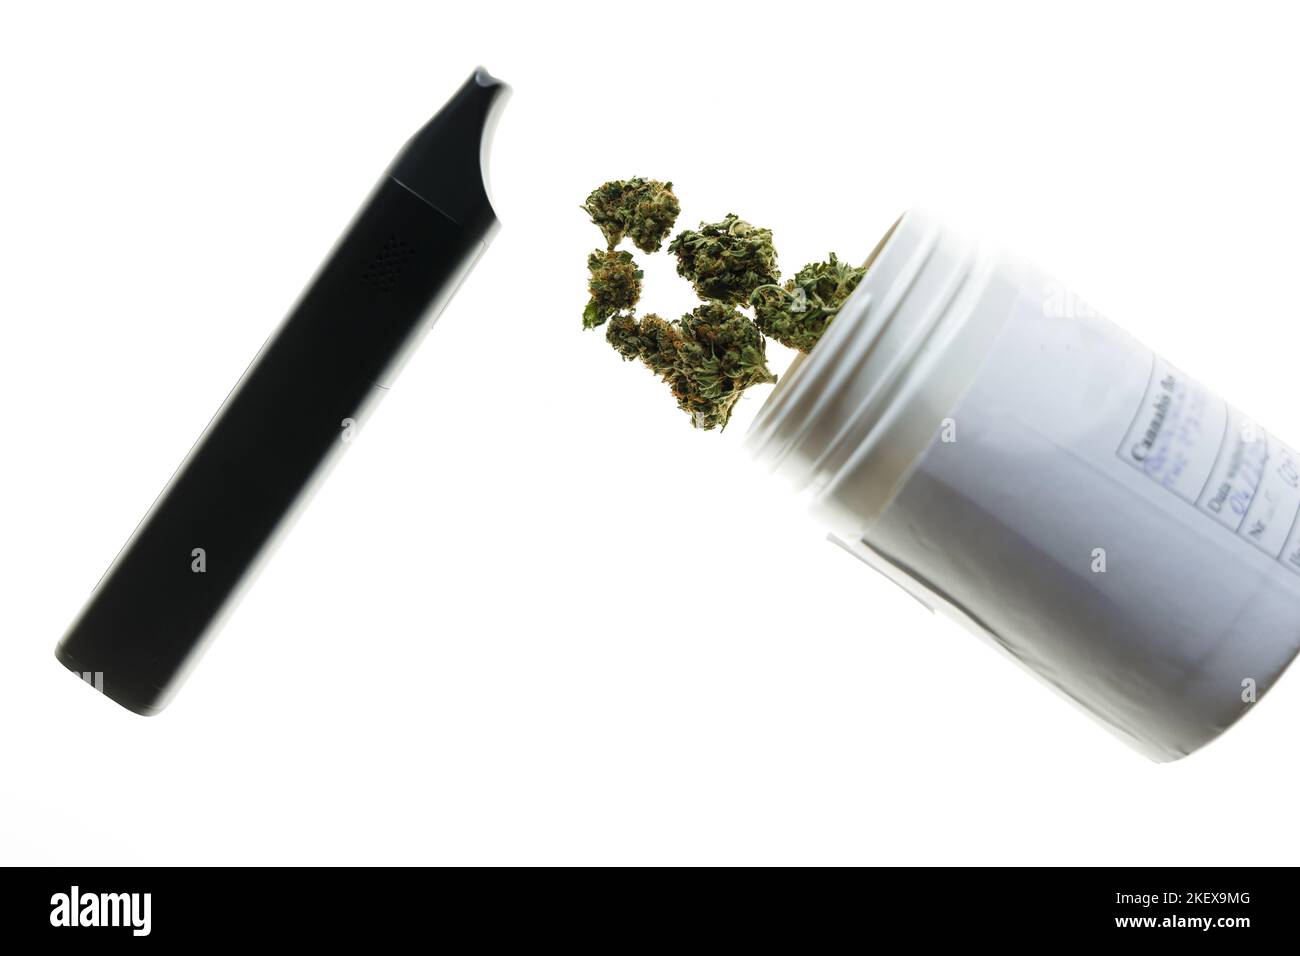 Flos de cannabis, marijuana médicale dans un contenant blanc à côté du vaporisateur, manière sûre de prendre des médicaments Banque D'Images